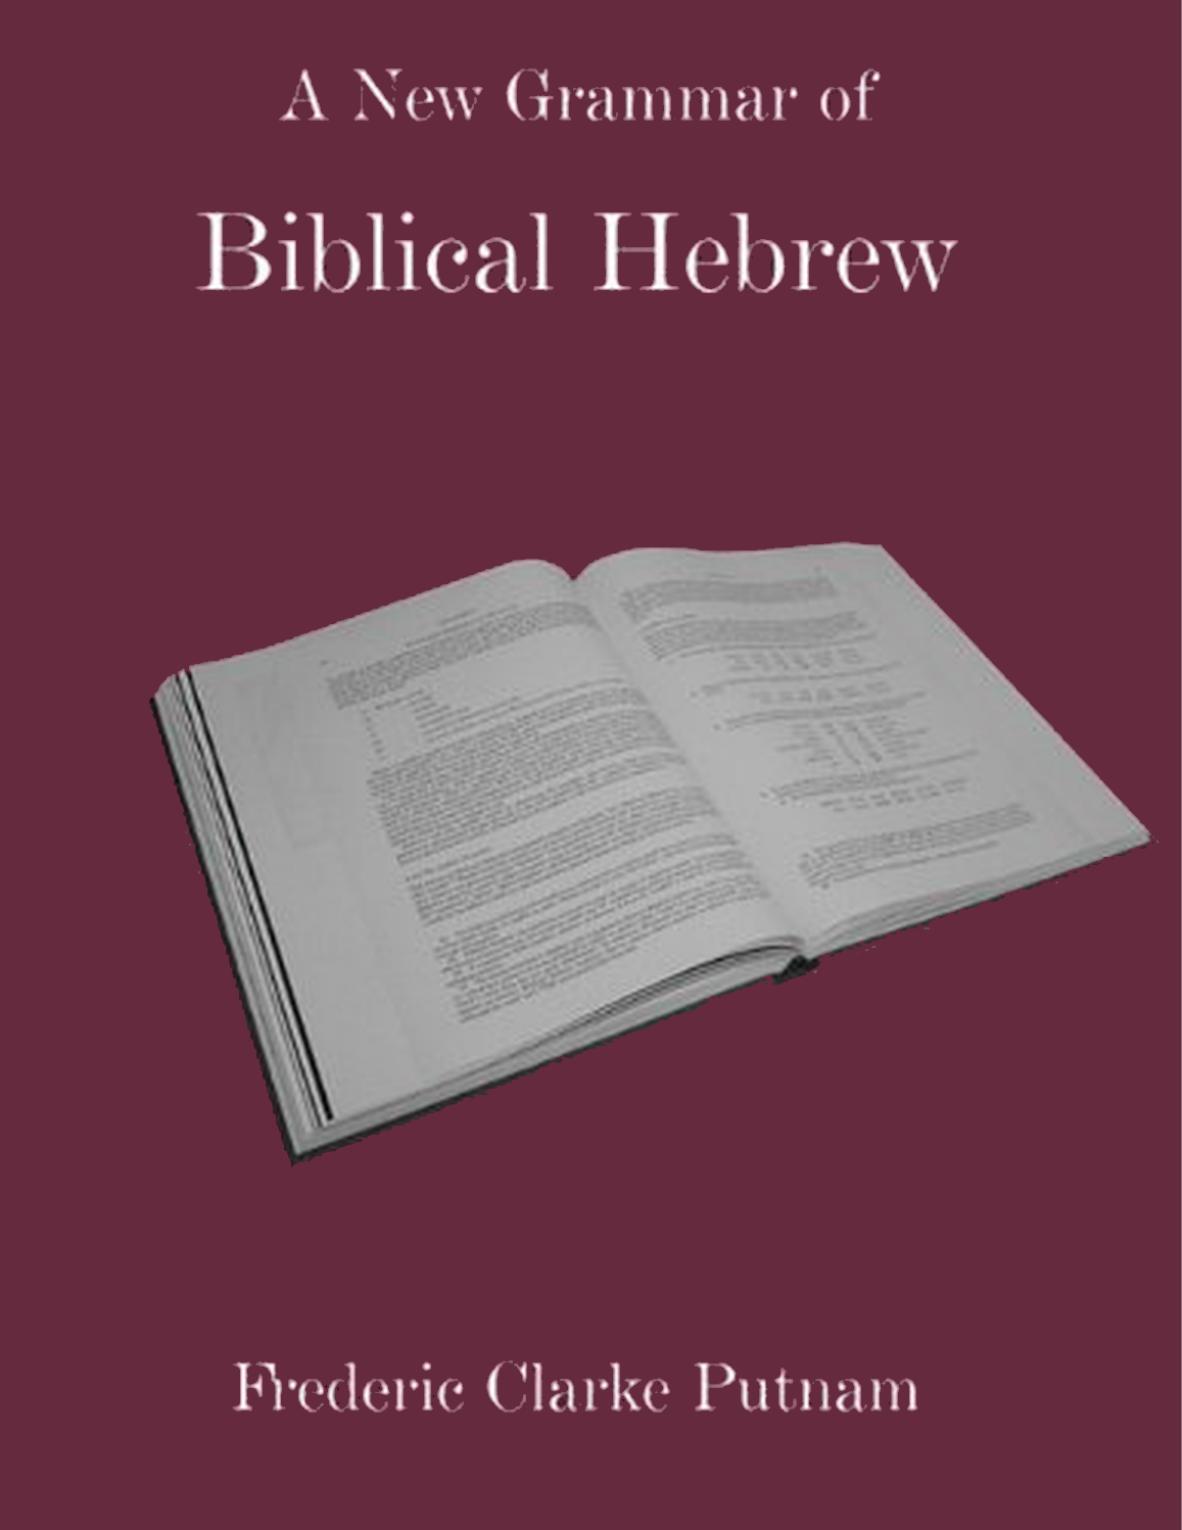 A New Grammar of Biblical Hebrew ( 2010